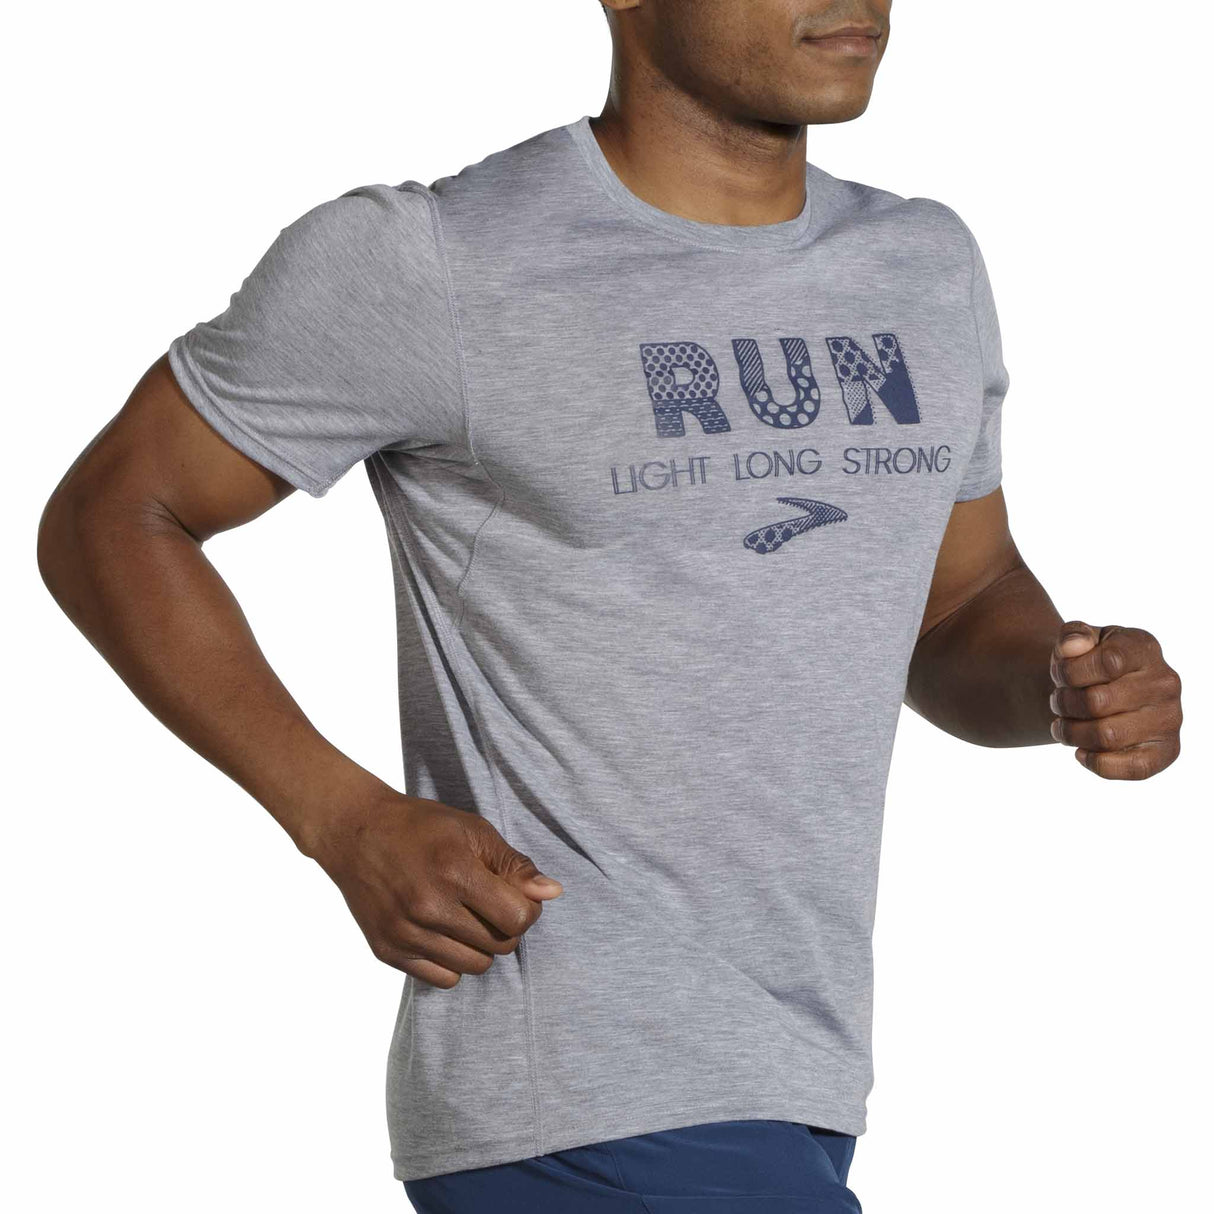 Brooks Distance Graphic T-shirt sport de course à pied homme - Heather Ash / Run Light